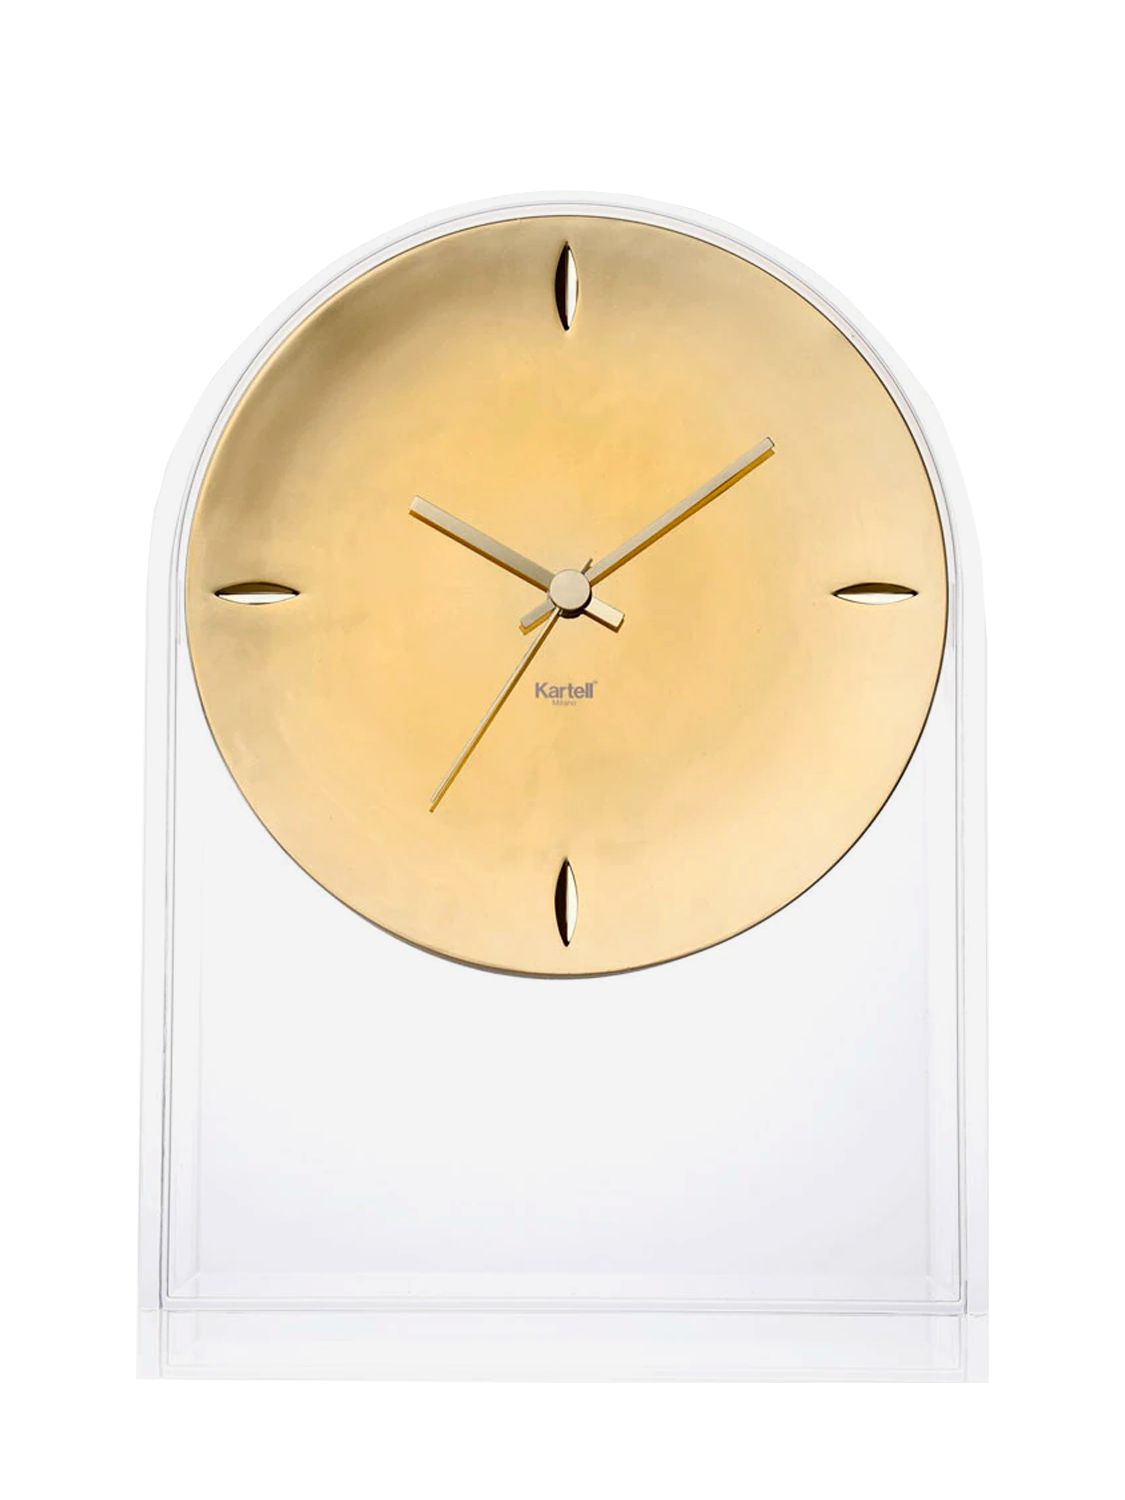 Kartell Air Du Temps Clock In Gold